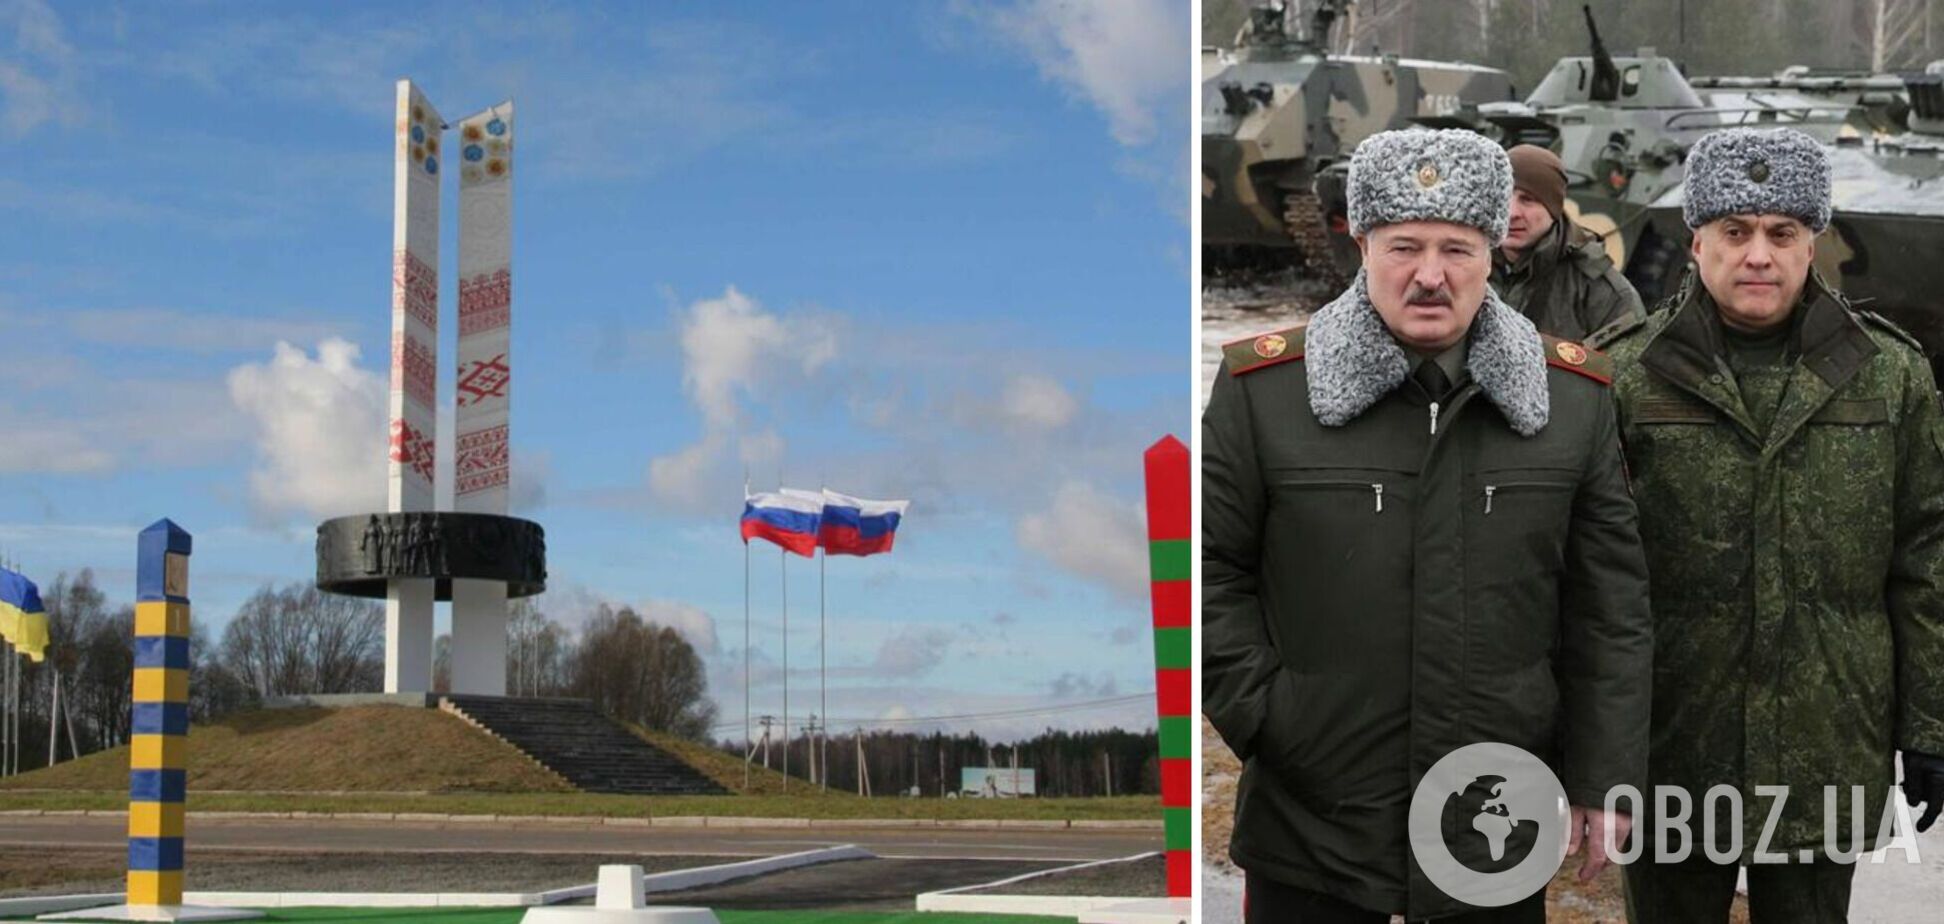 Північні рубежі повністю під контролем ЗСУ: Наєв про перевірку бойової готовності в Білорусі та ситуацію на кордоні